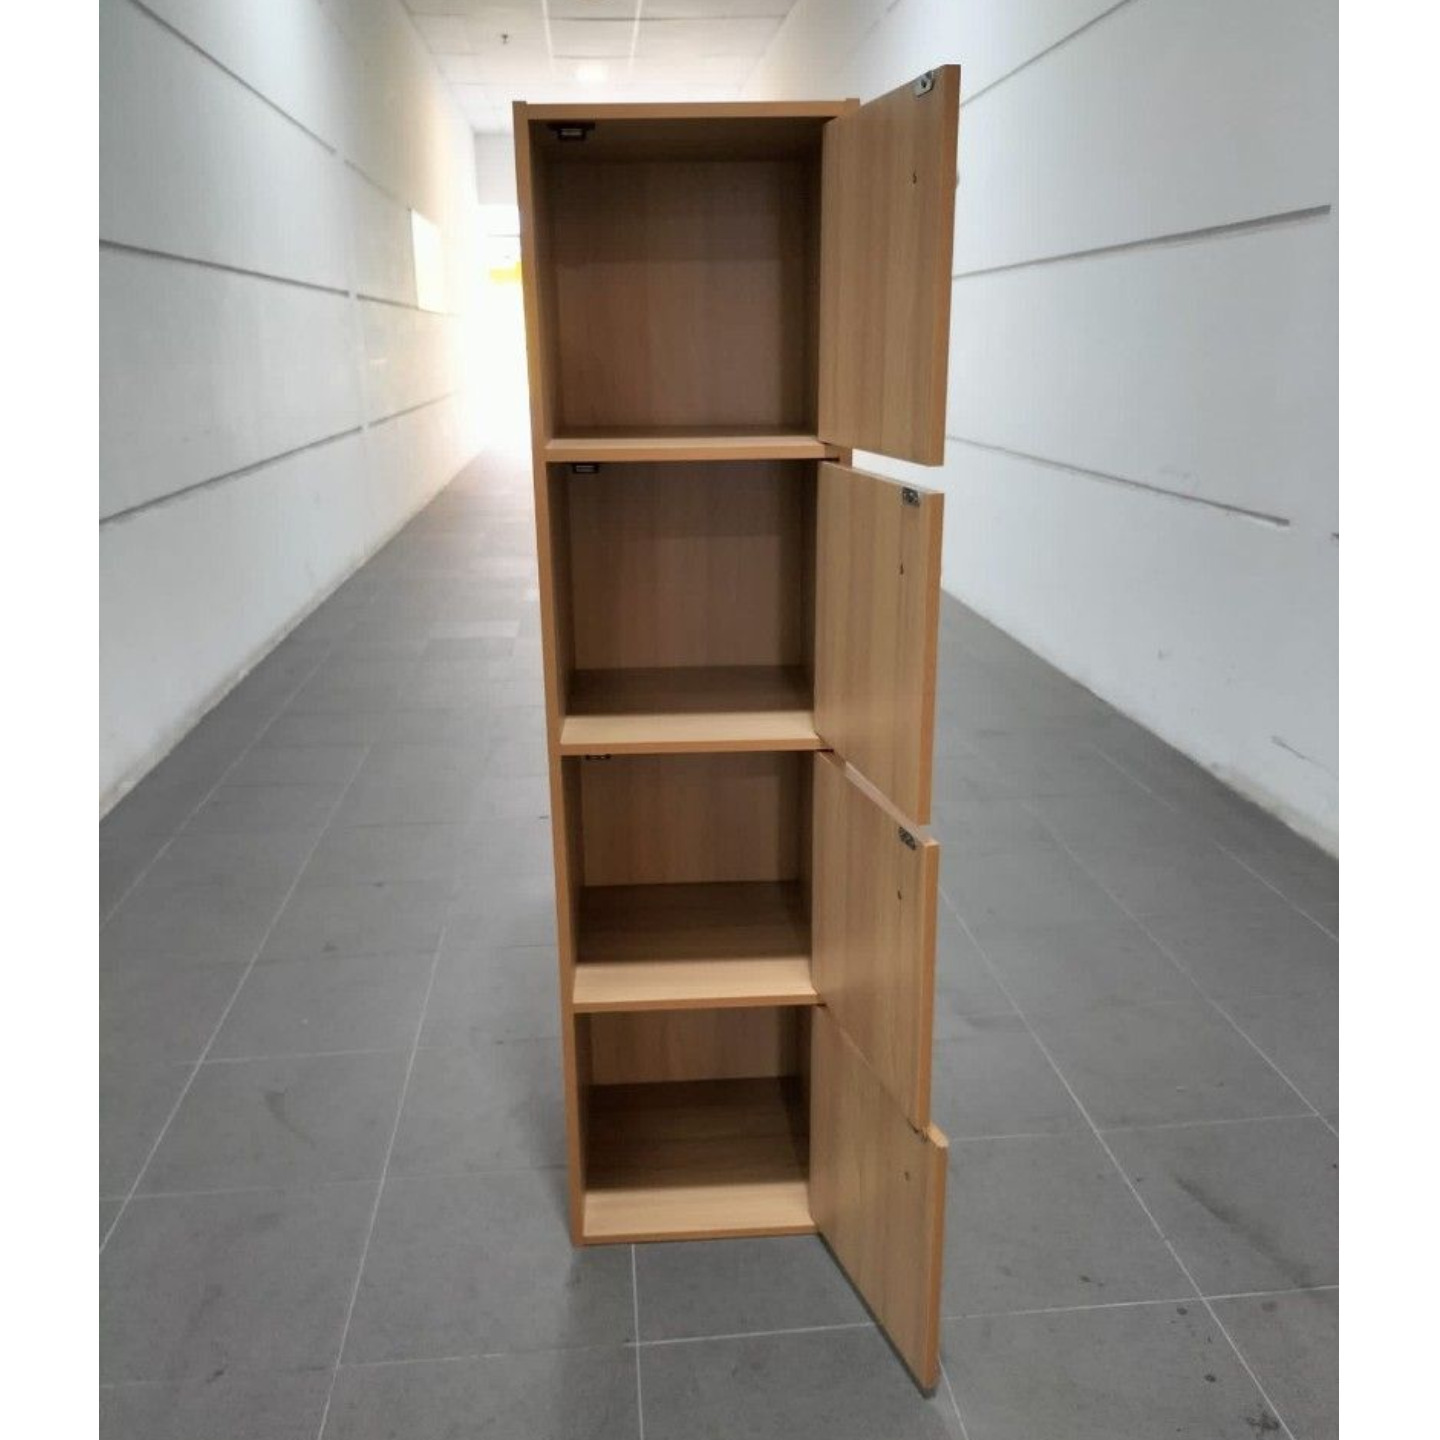 VIMO 4 Tier Shelf with Doors in OAK